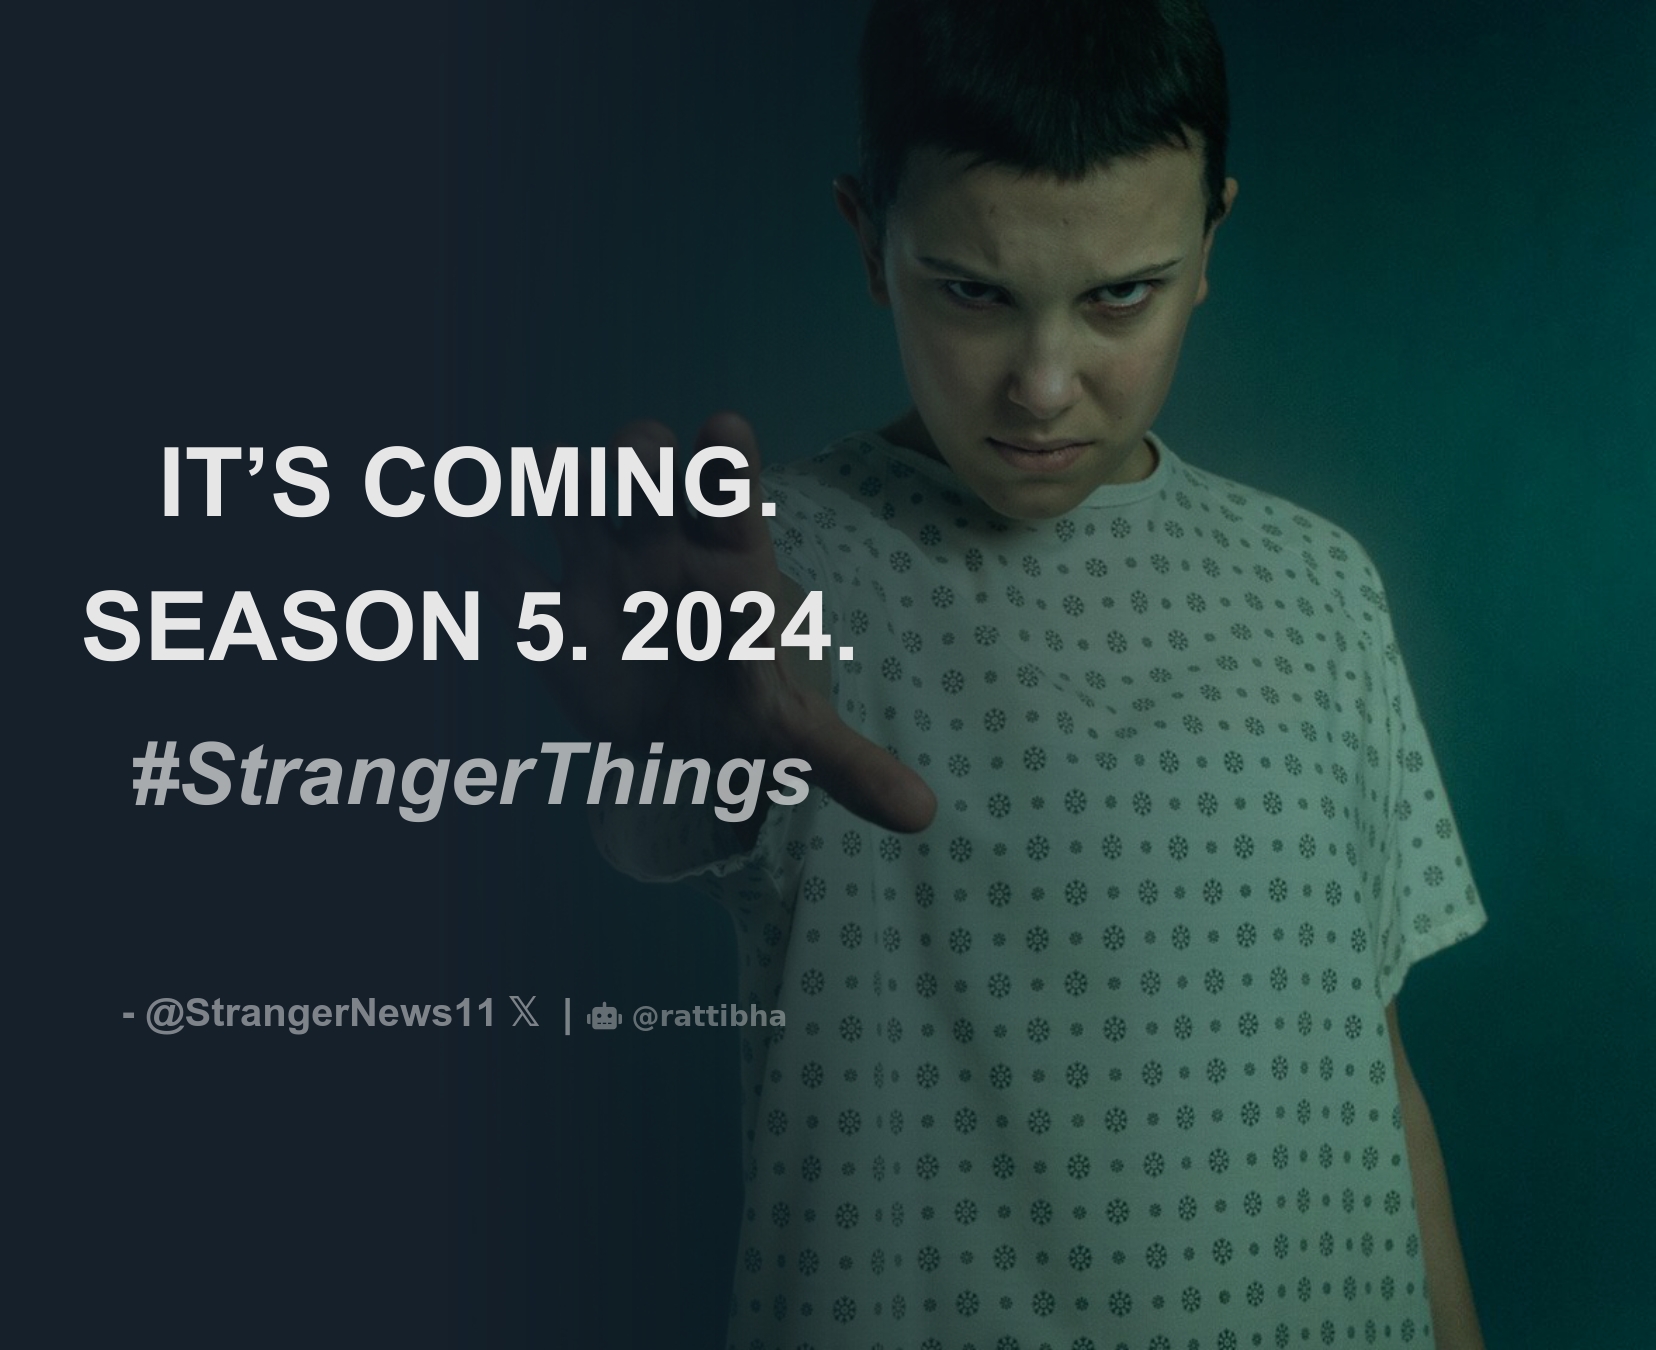 Stranger News on X: SEASON 5 COMING IN 2024. #StrangerThings